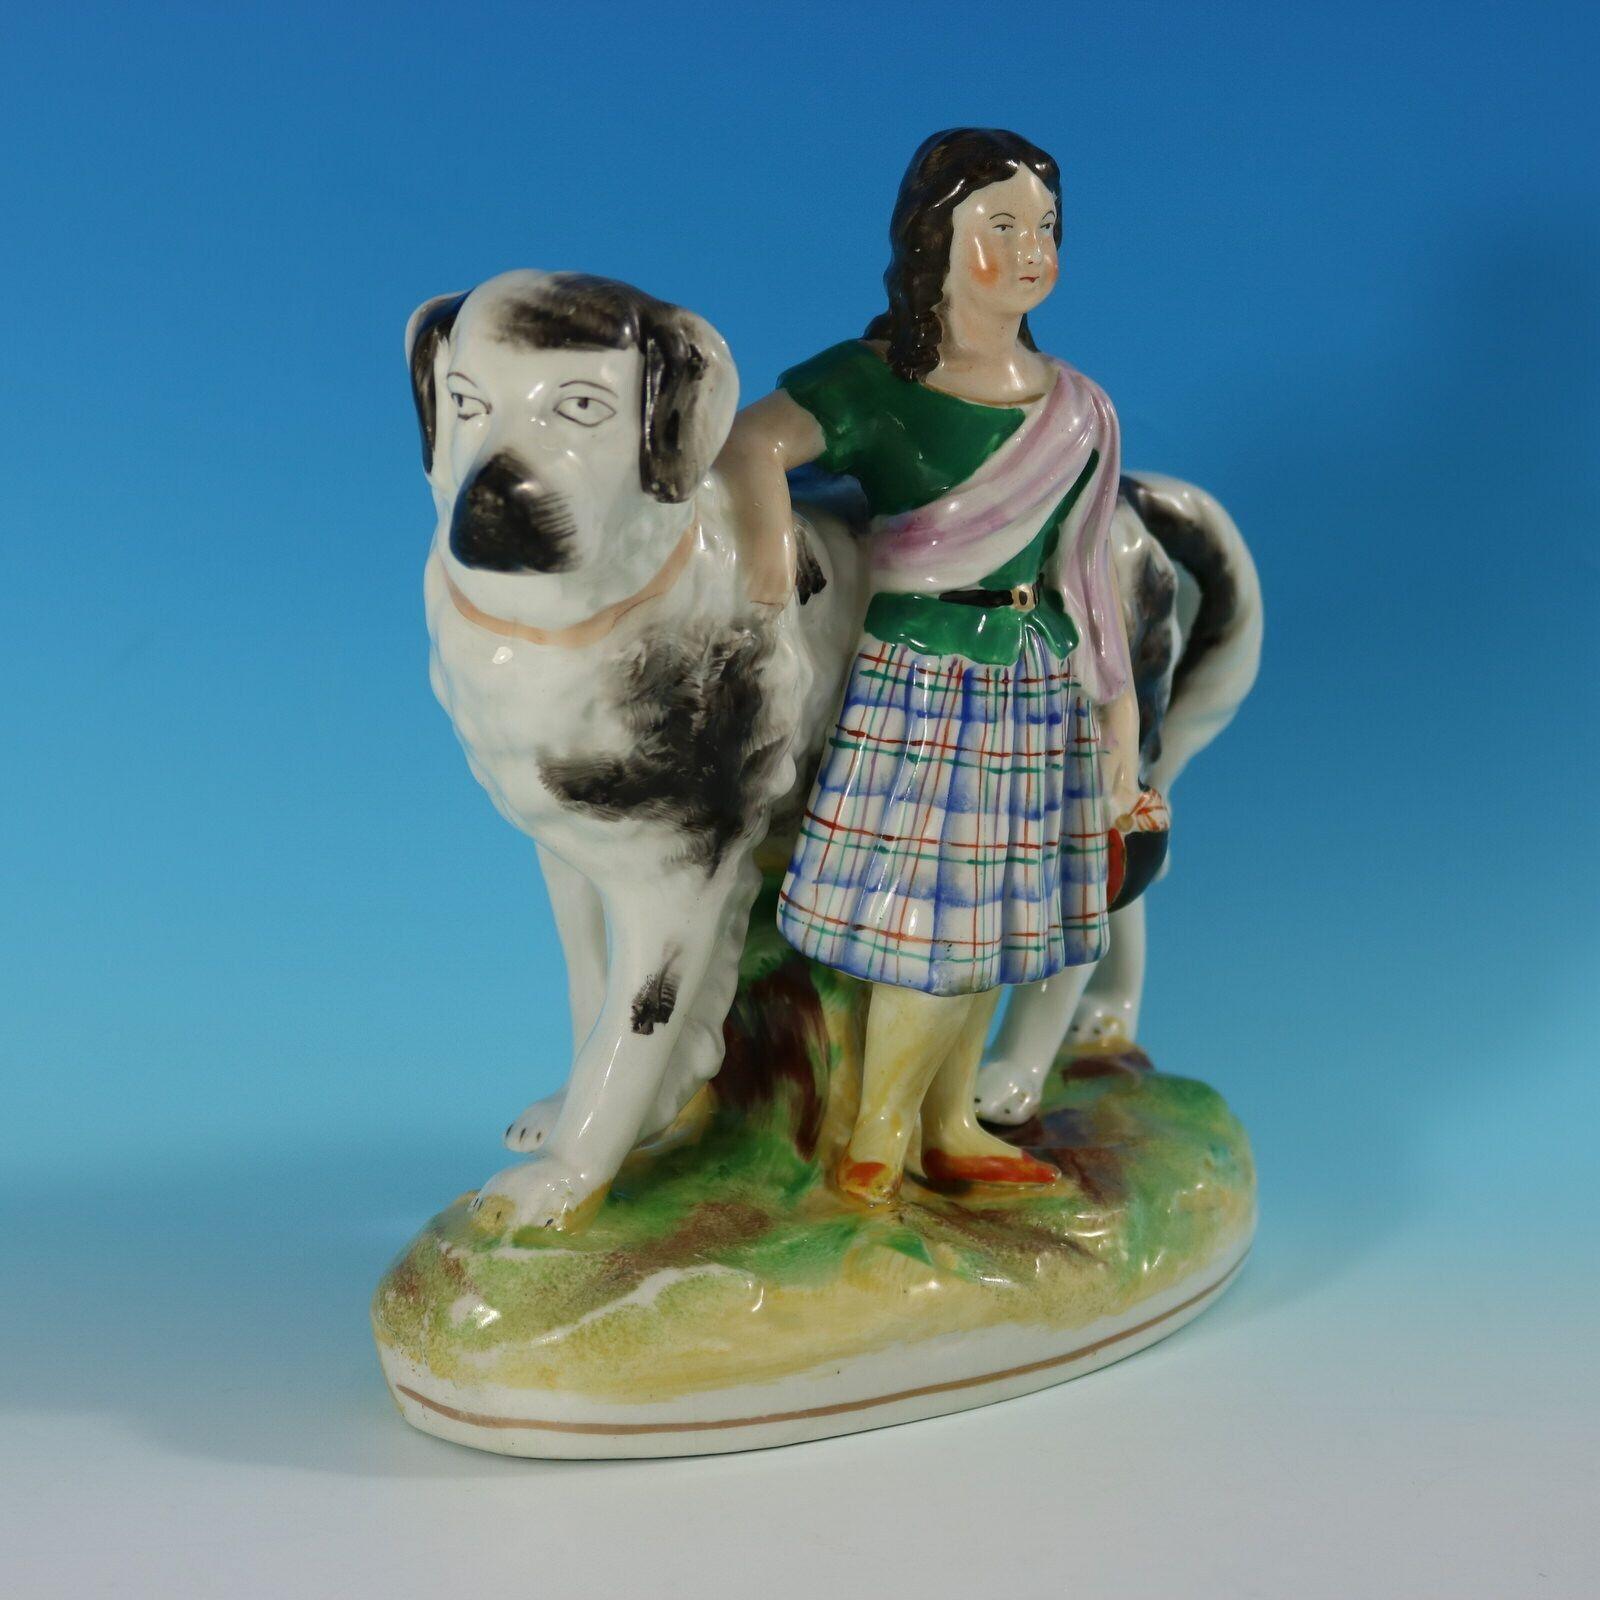 Parr Factory Staffordshire-Figur mit Kindheitsthema, die ein Mädchen zeigt, das vor einem Bernhardinerhund steht und auf einem ovalen Sockel steht. Mattvergoldete Grundlinie und Verzierungen. Dekoriert 